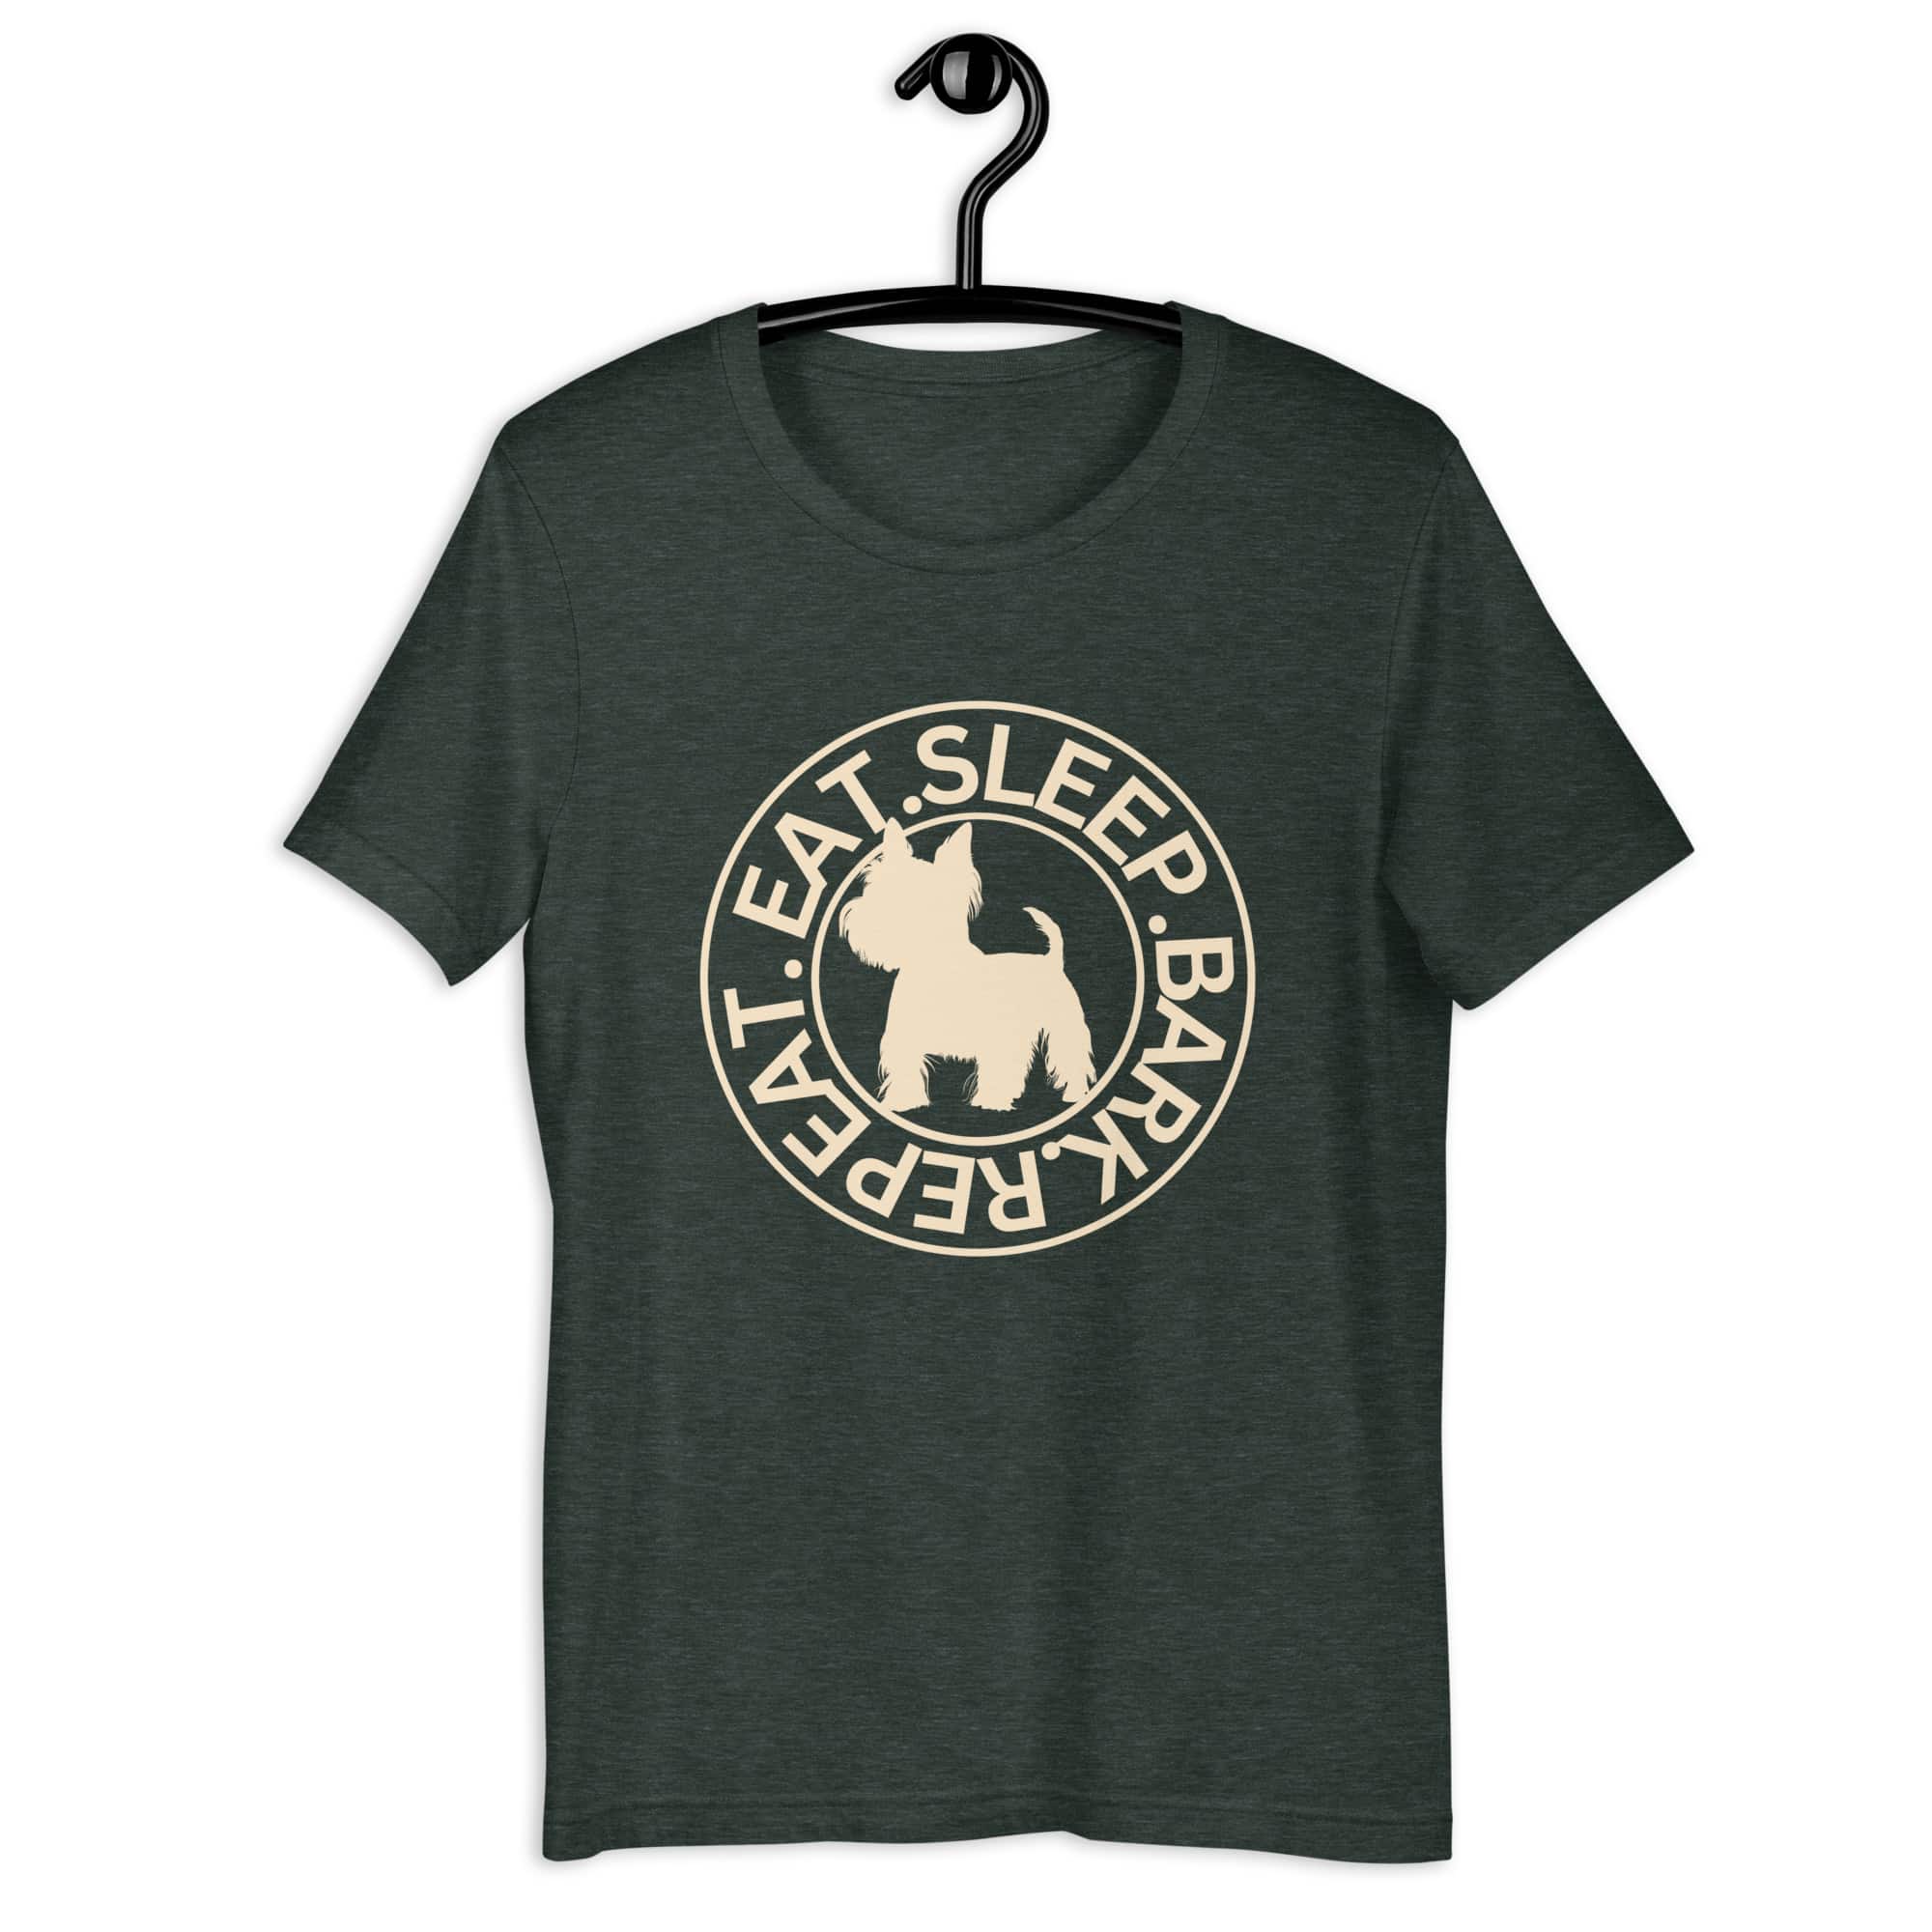 Eat Sleep Bark Repeat Biewer Terrier Unisex T-Shirt. Heather Forest green